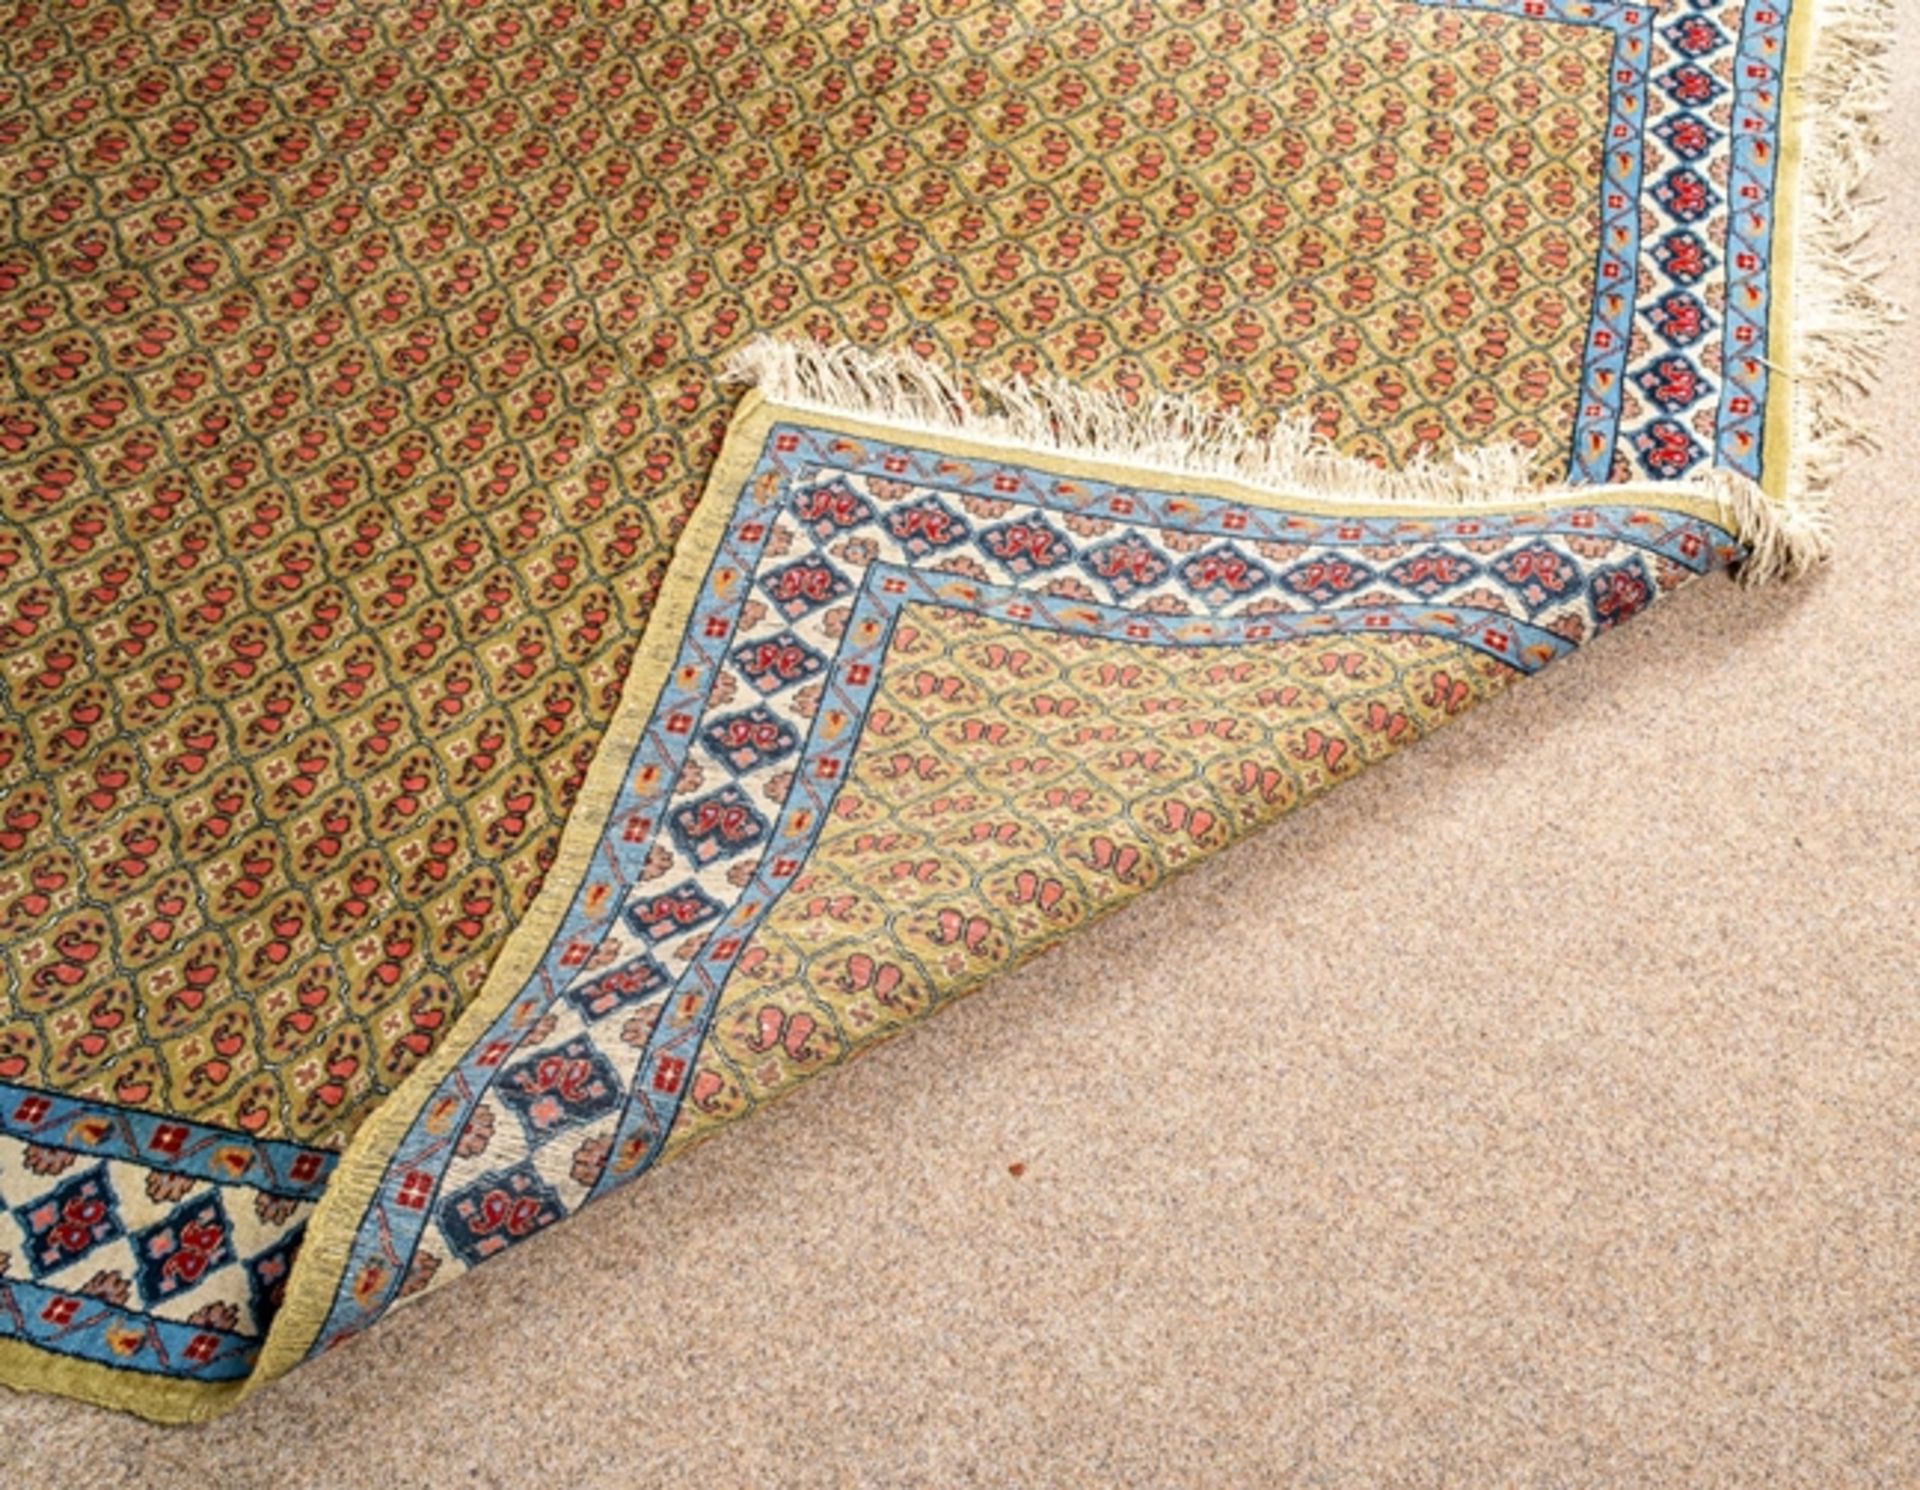 Machilipatnam "Teppich", antik, Südostasien, Ende 19. Jhd. Wolle auf Baumwolle. - Bild 5 aus 5